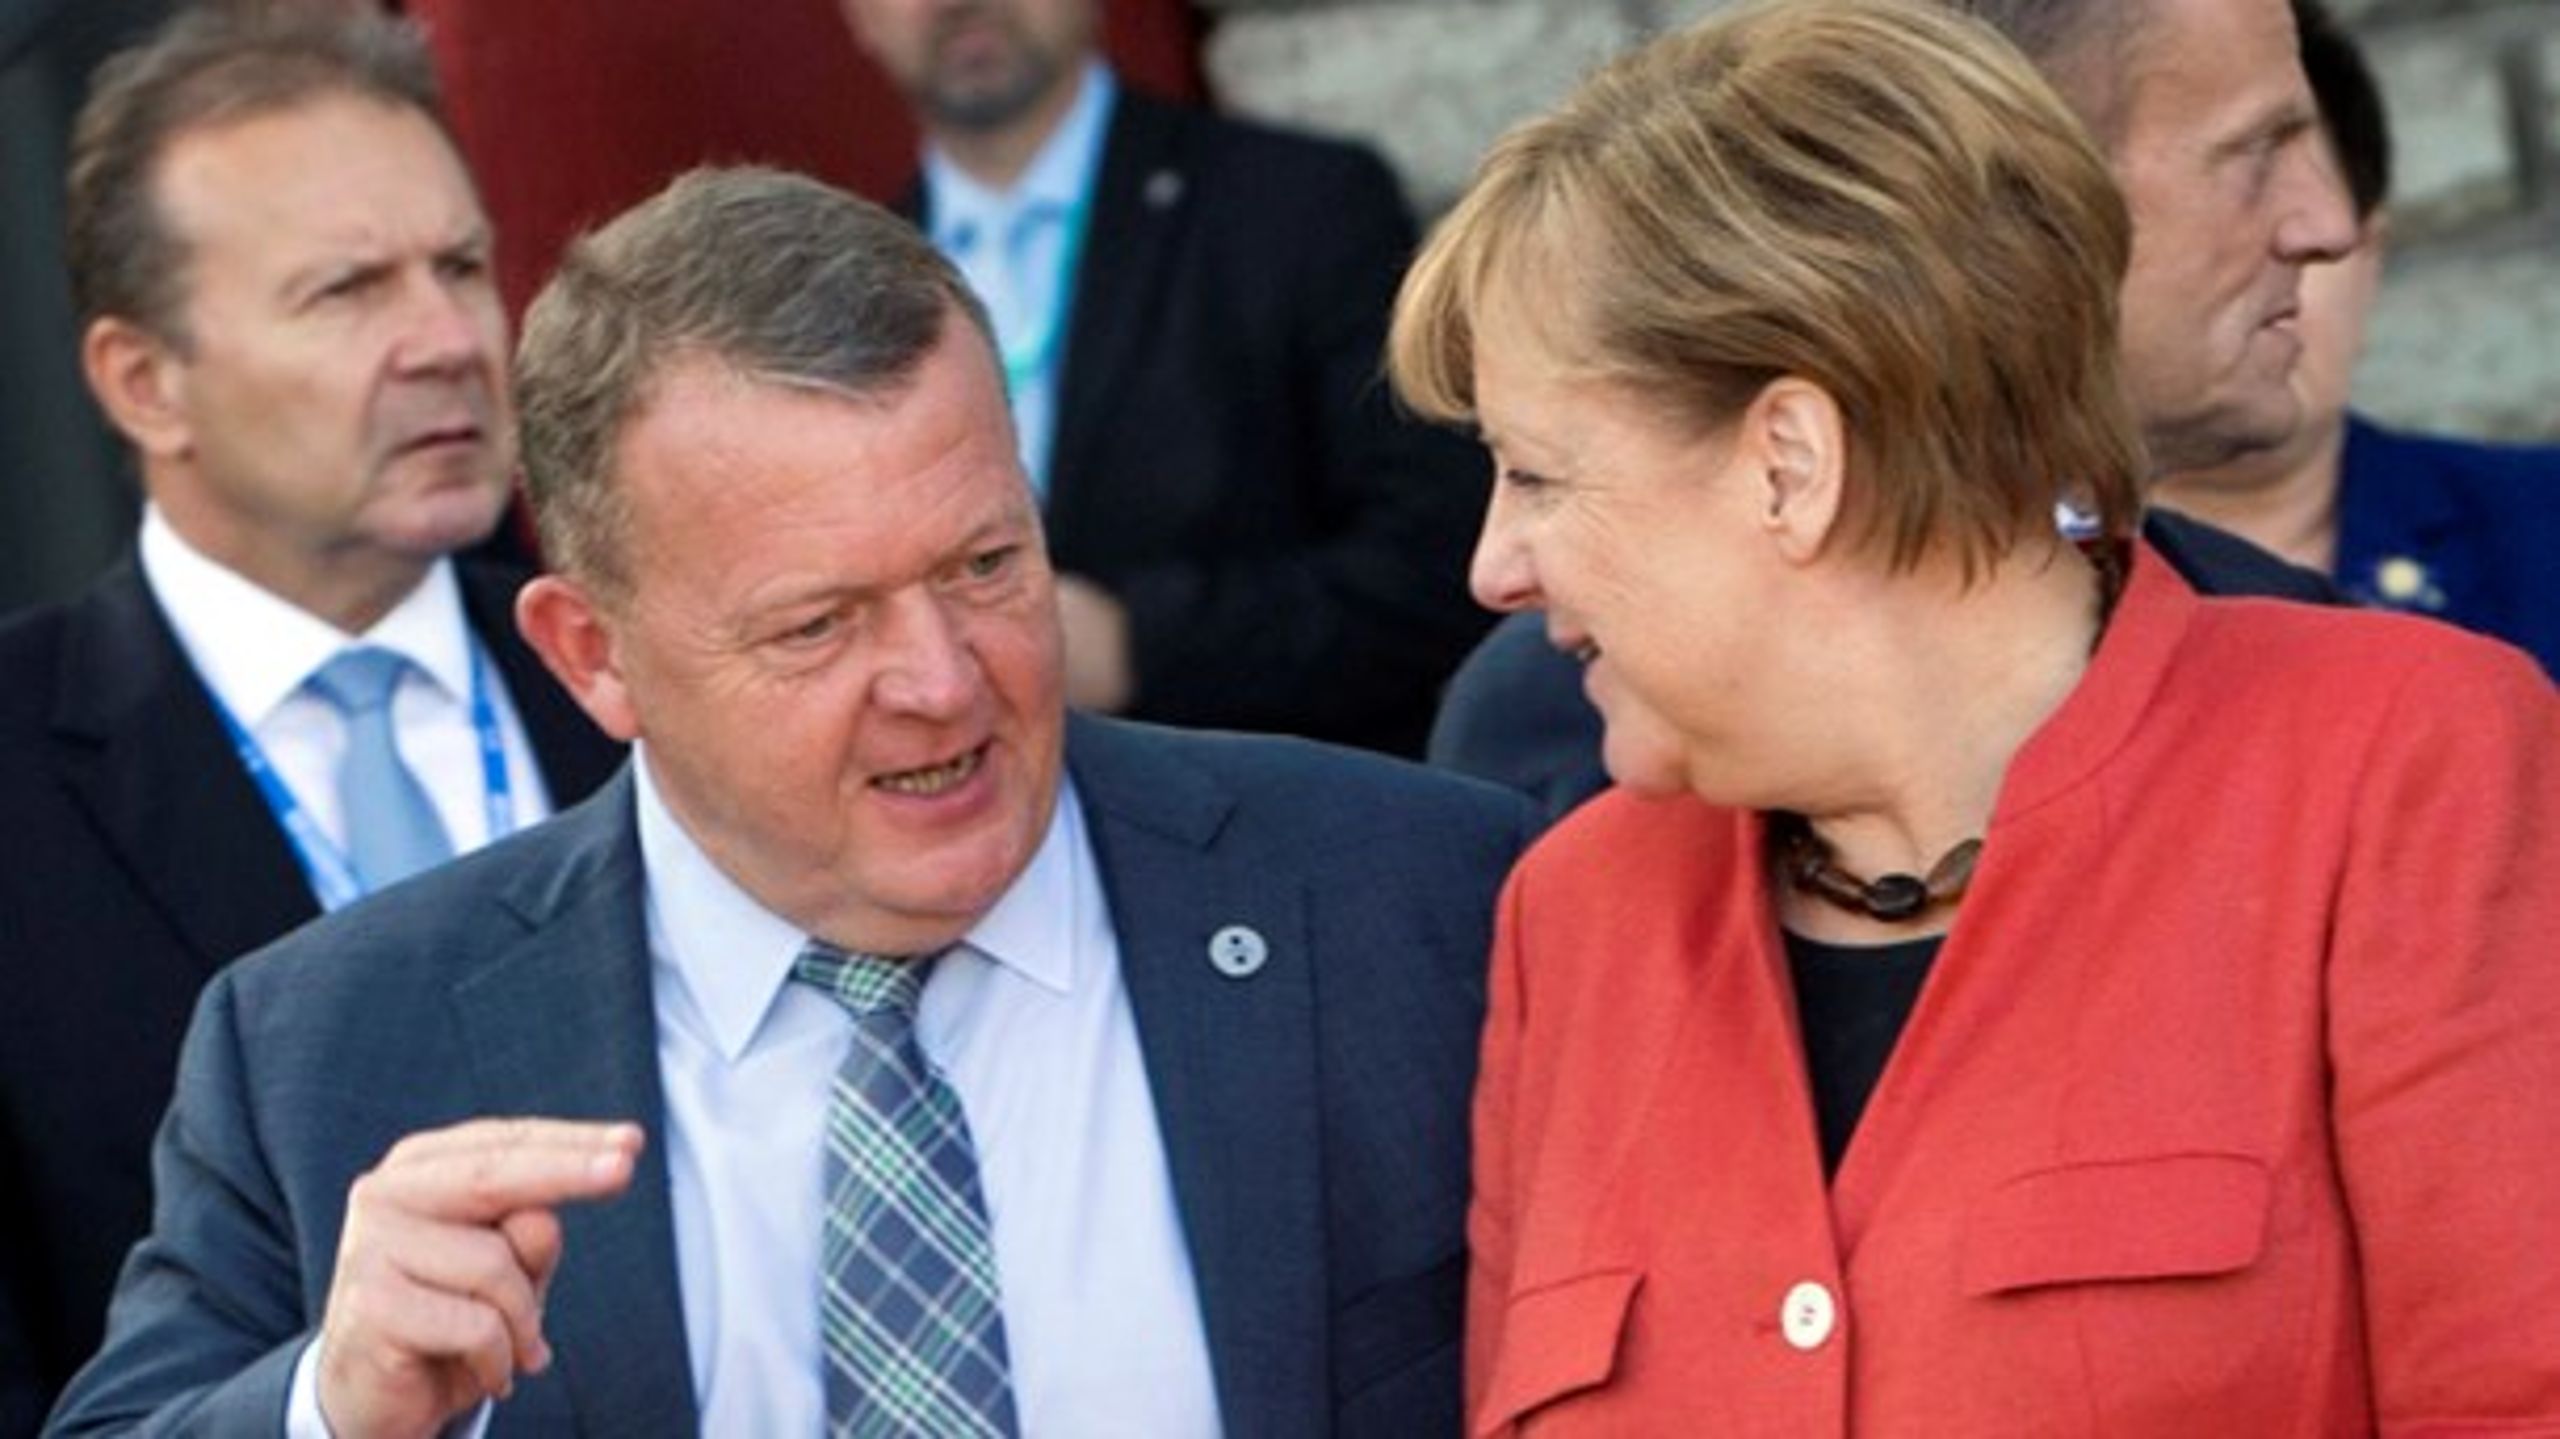 Statsministeren risikerer at sætte Danmarks forhold til Tyskland over styr ved at blande sig i den tyske indenrigsdebat, mener Jens Rohde.